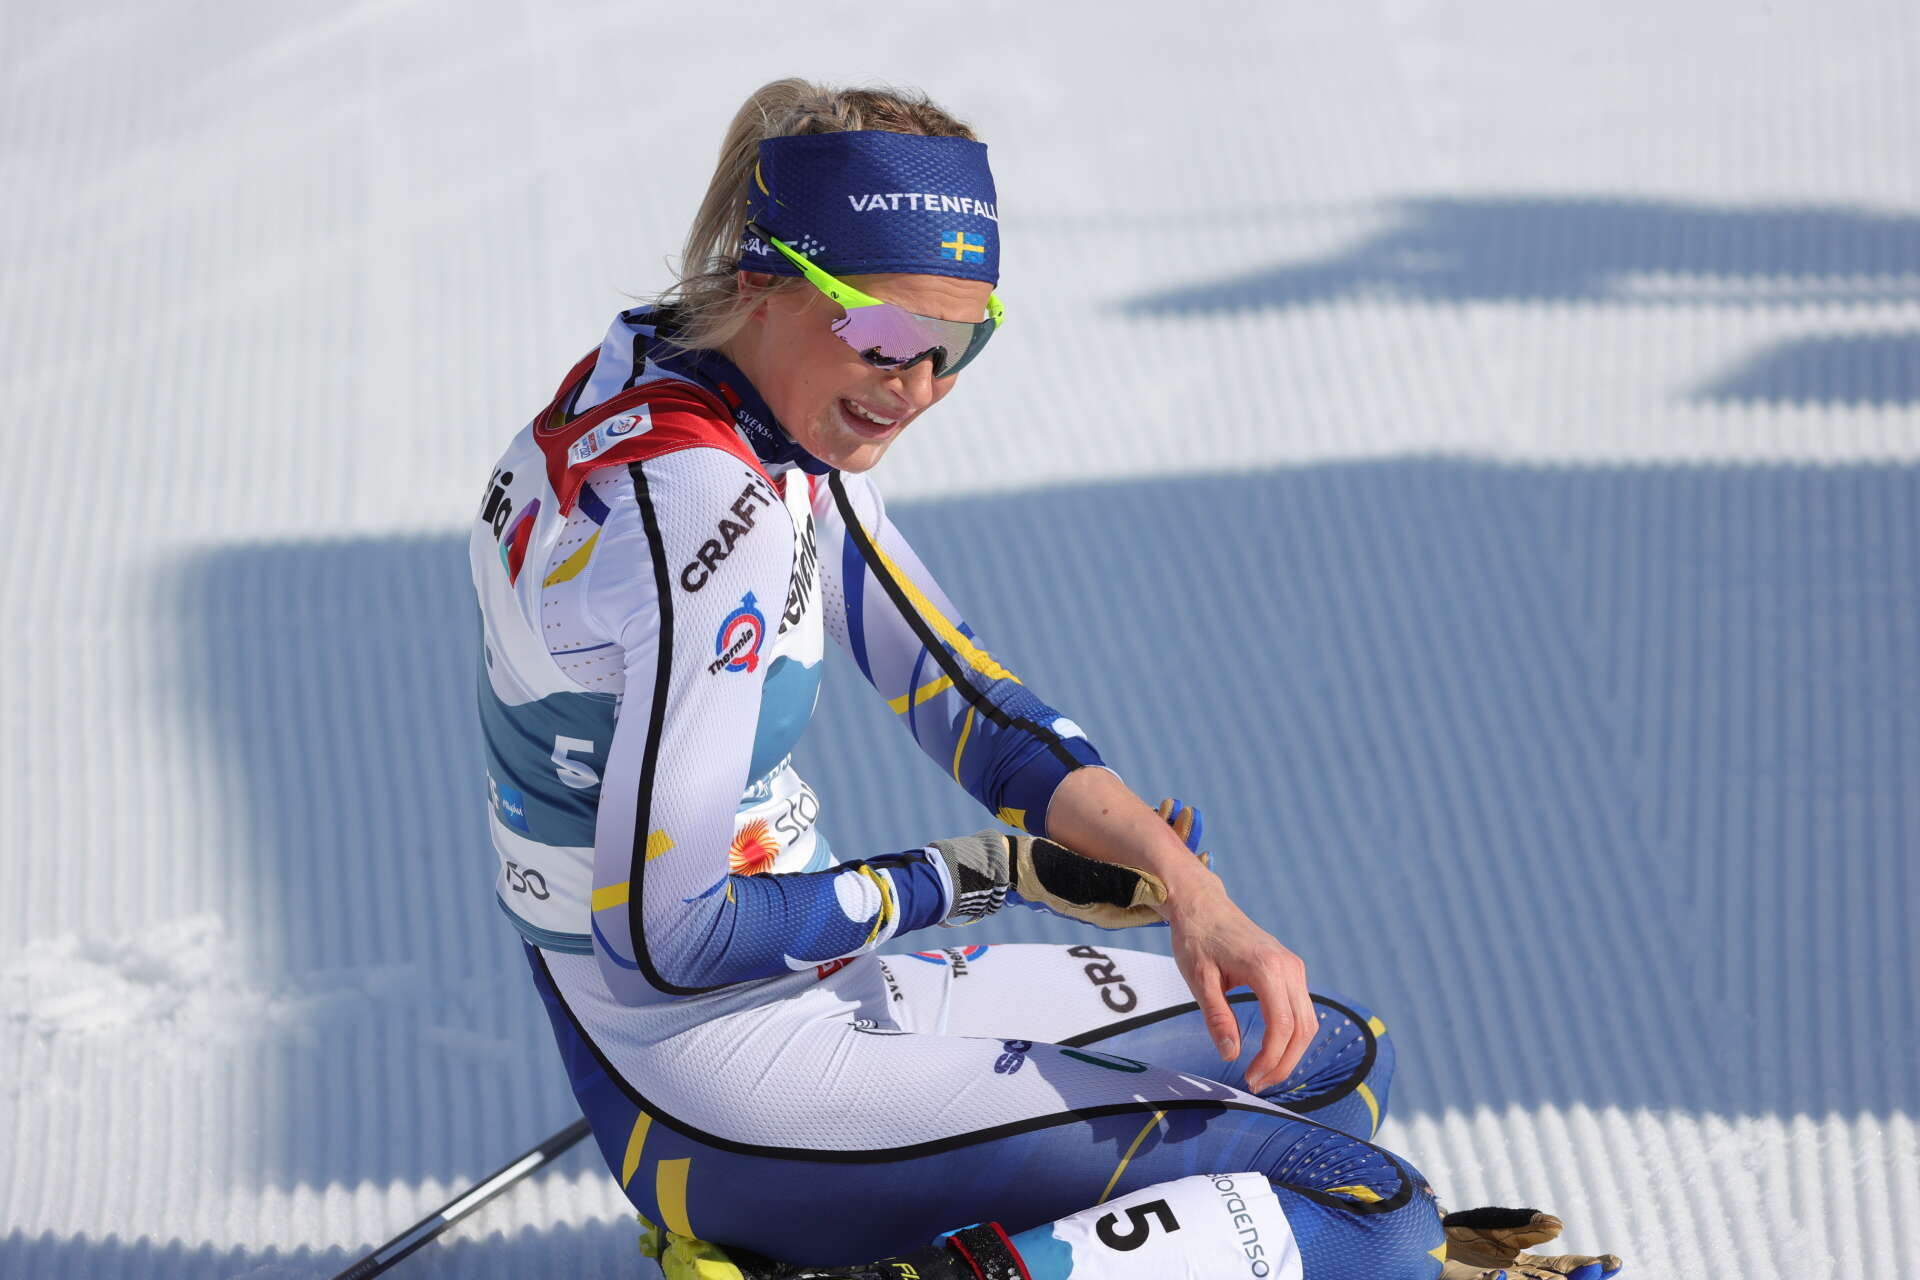 Sveriges bronsmedaljör Frida Karlsson skadade armen i ett fall under lördagens tremilslopp.